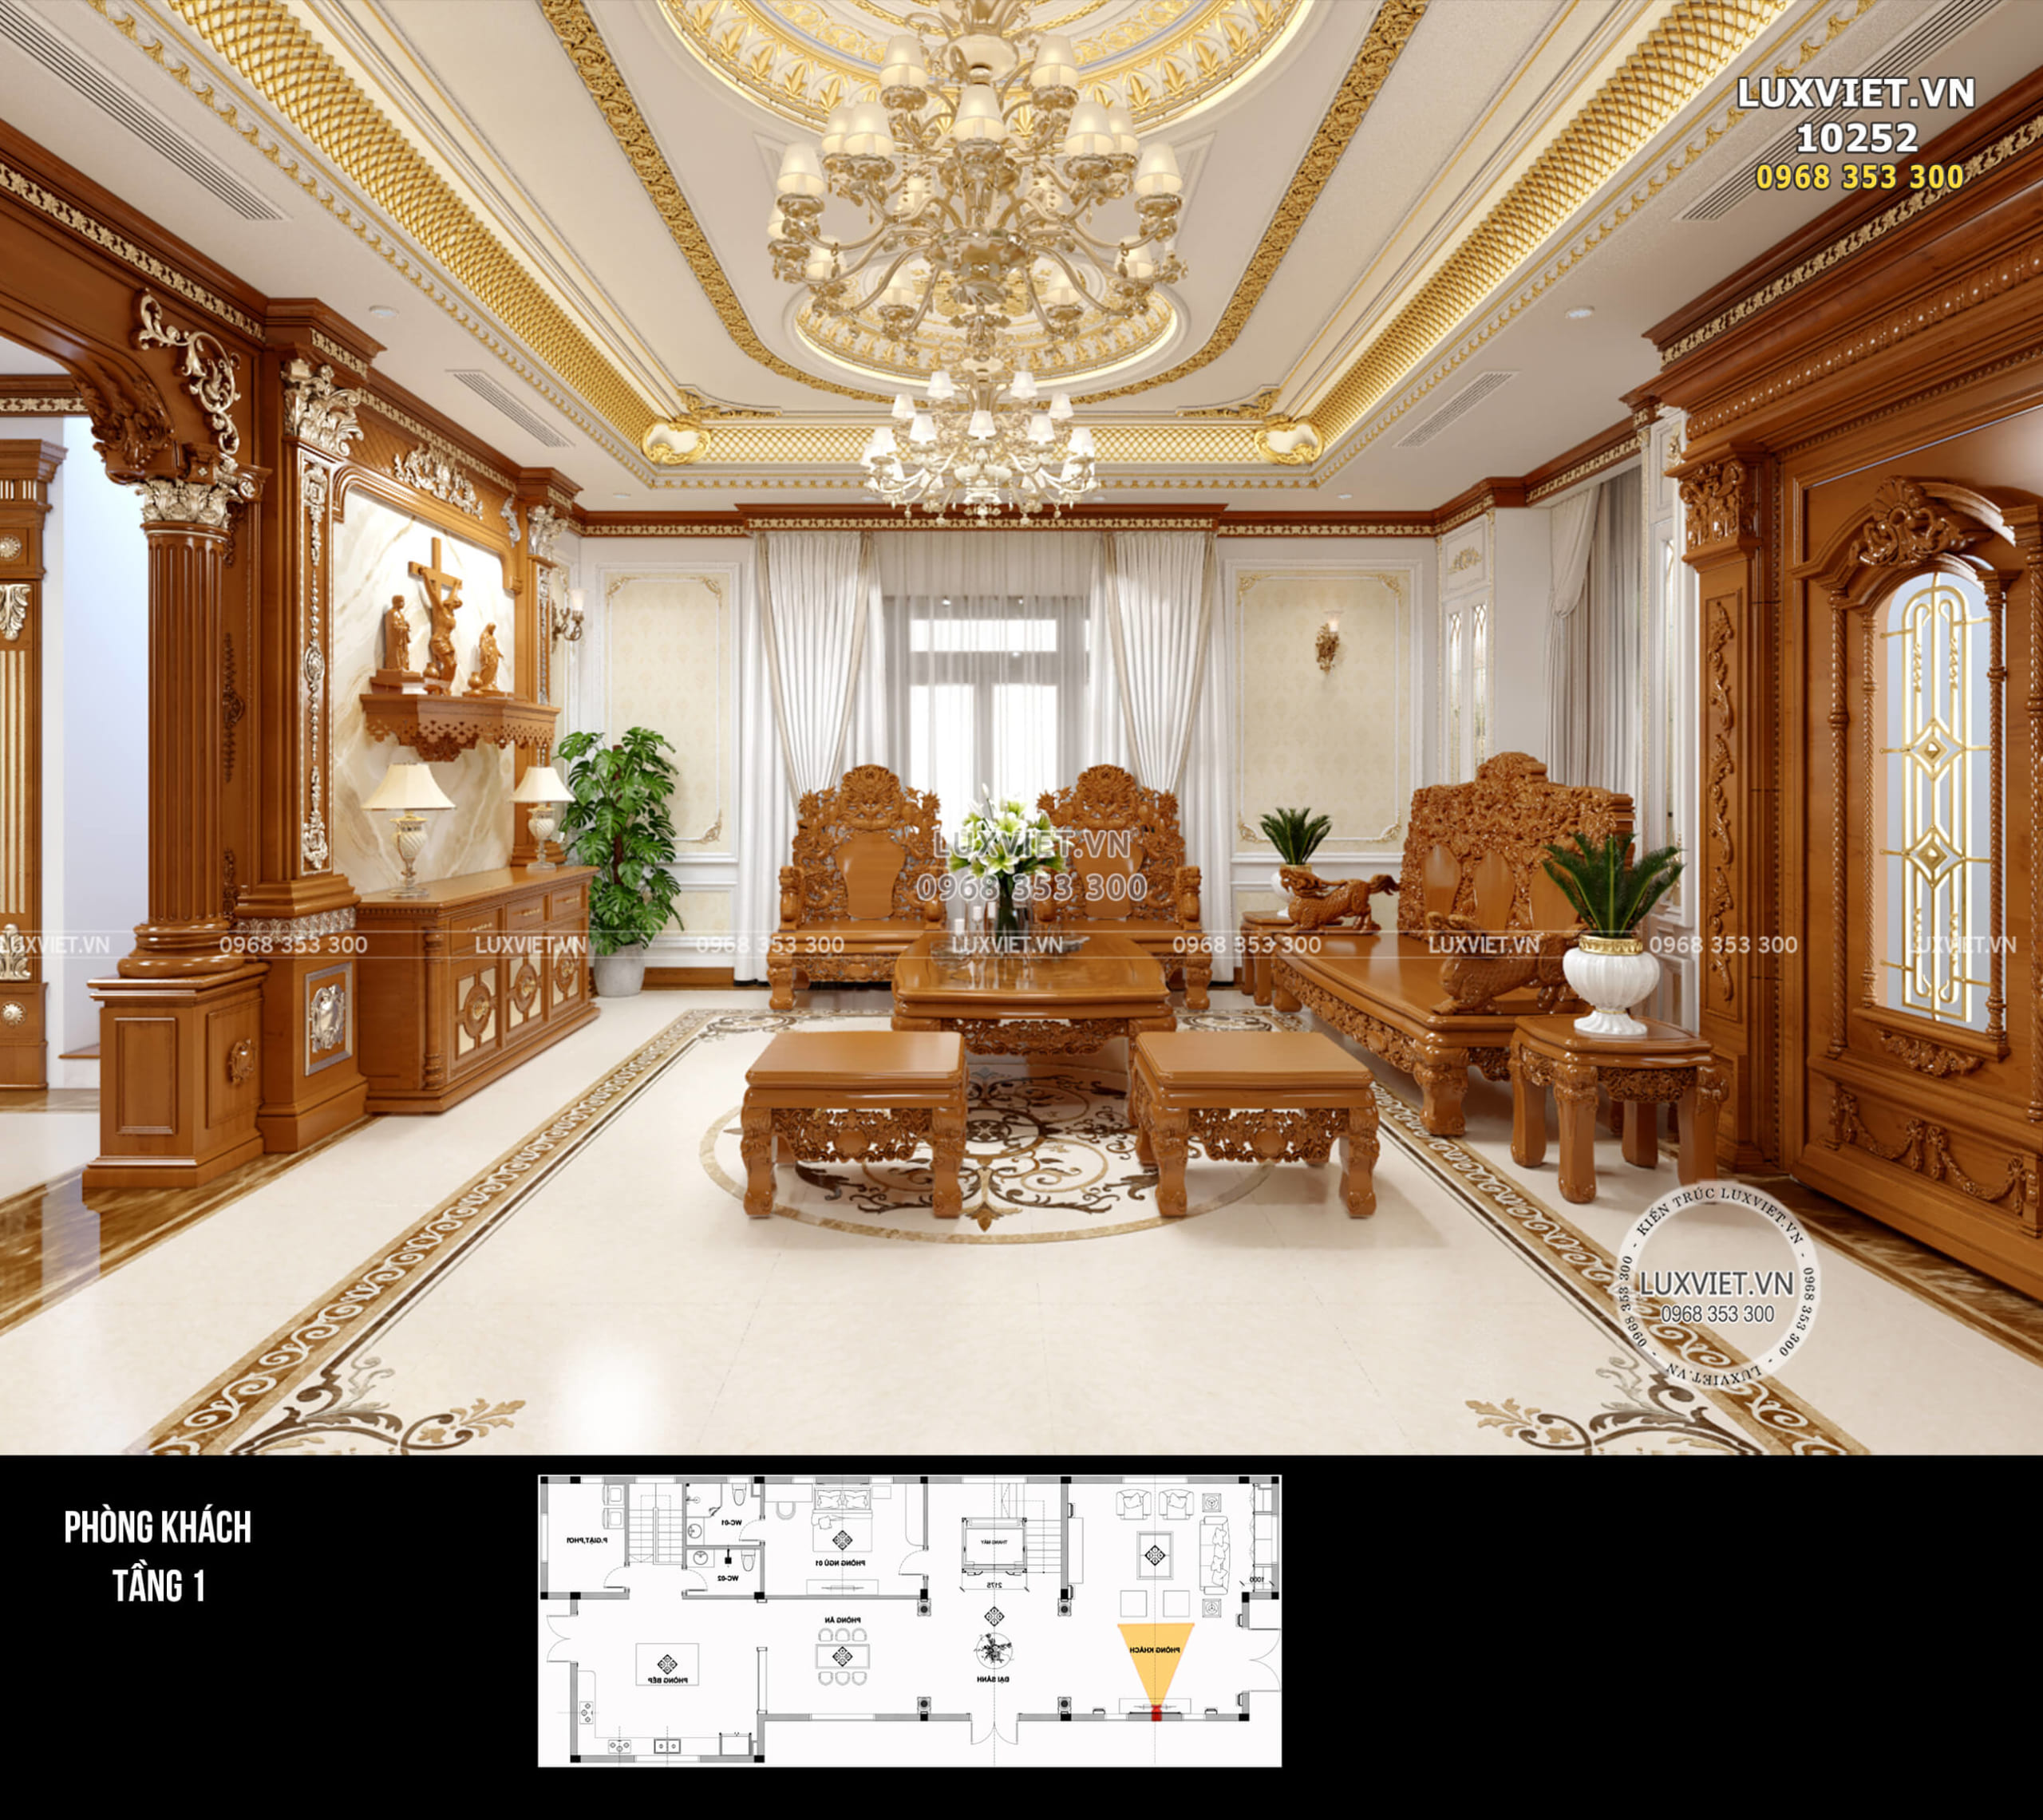 Hệ đèn trùm được lựa chọn trang trí cho phòng khách hợp với kiến trúc tân cổ điển